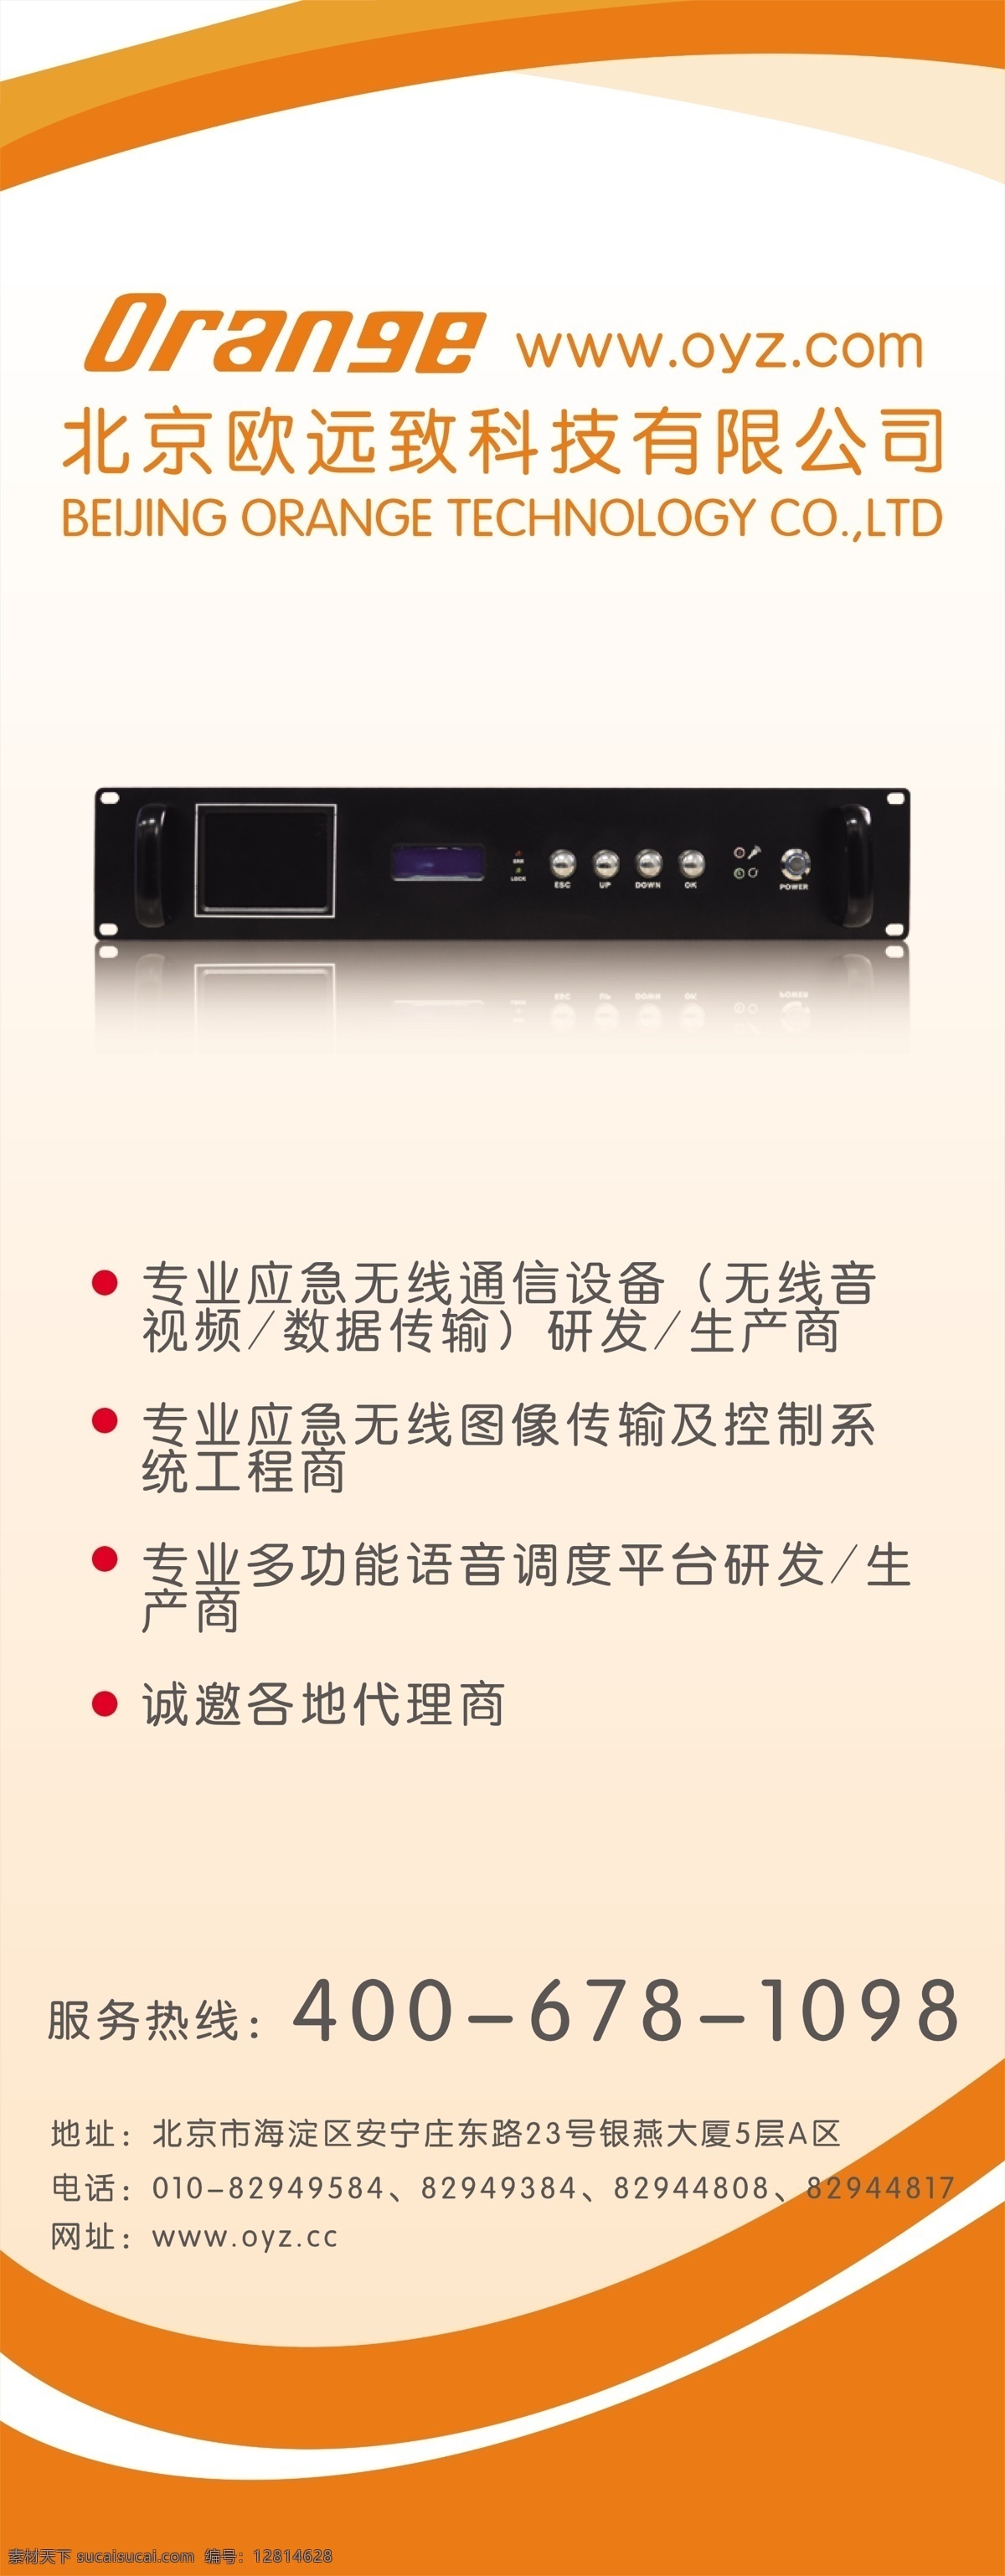 无线 传输器 分层 橙色背景 模板 数码 易拉宝 易拉宝模板 源文件 无线传输器 矢量图 现代科技